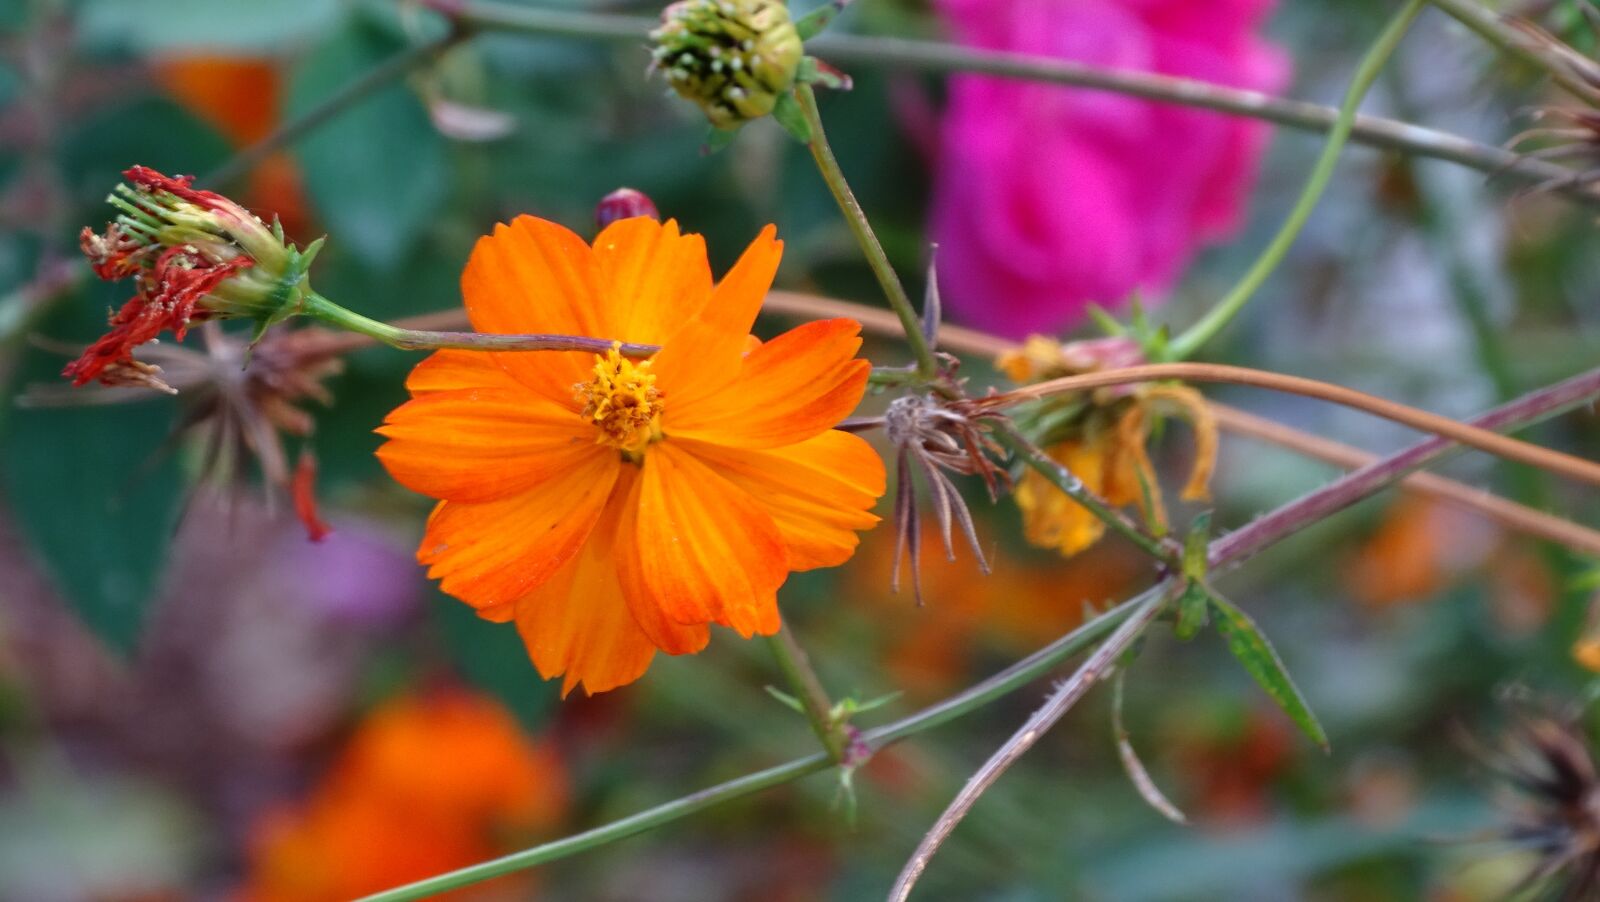 Sony Cyber-shot DSC-HX400V sample photo. Orange, flower, garden photography